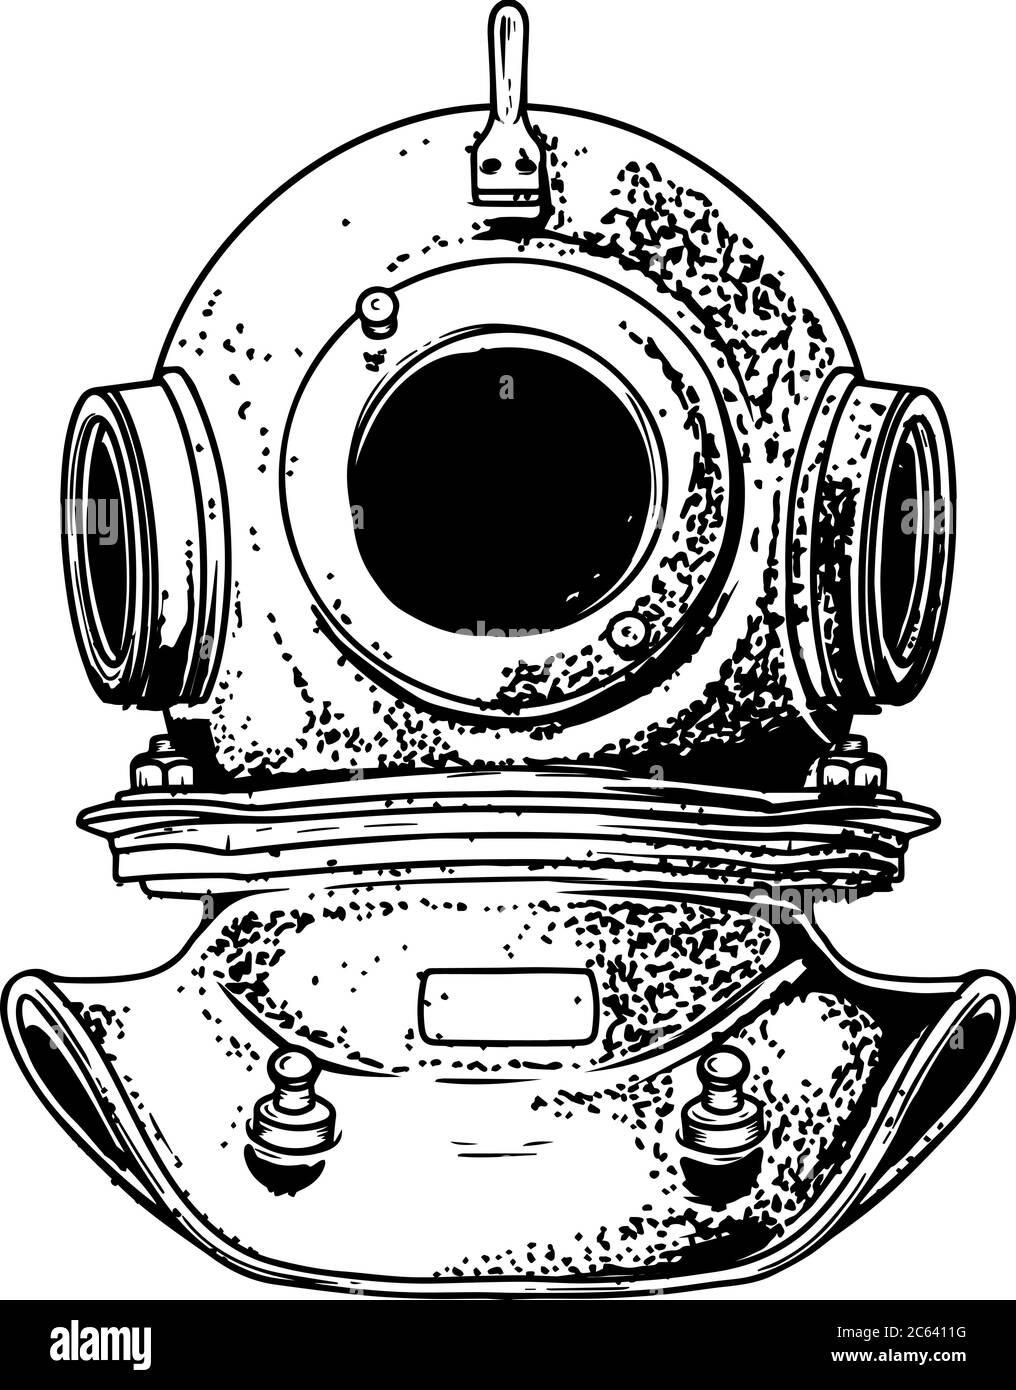 Vintage Taucher Helm in Gravur-Stil isoliert auf weißem Hintergrund. Gestaltungselement für Logo, Etikett, Schild, Plakat. Vektor-Illustration, Vintage Taucher Stock Vektor